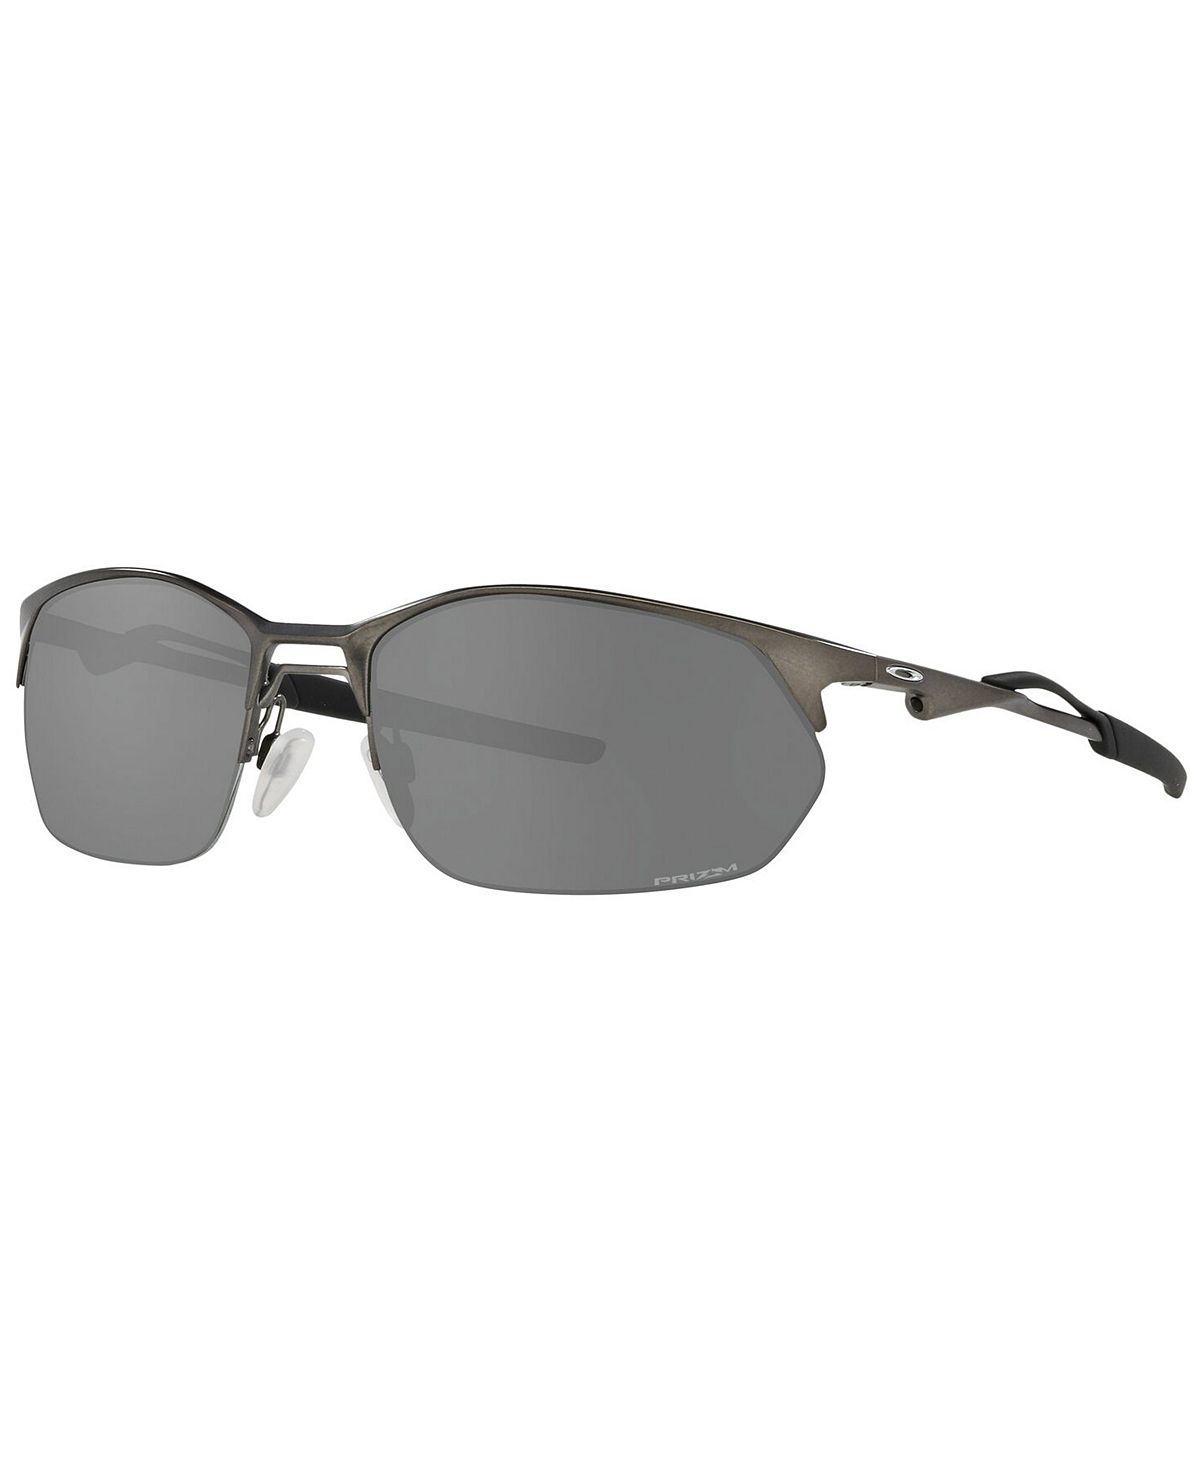 Мужские солнцезащитные очки, OO4145 60 Oakley